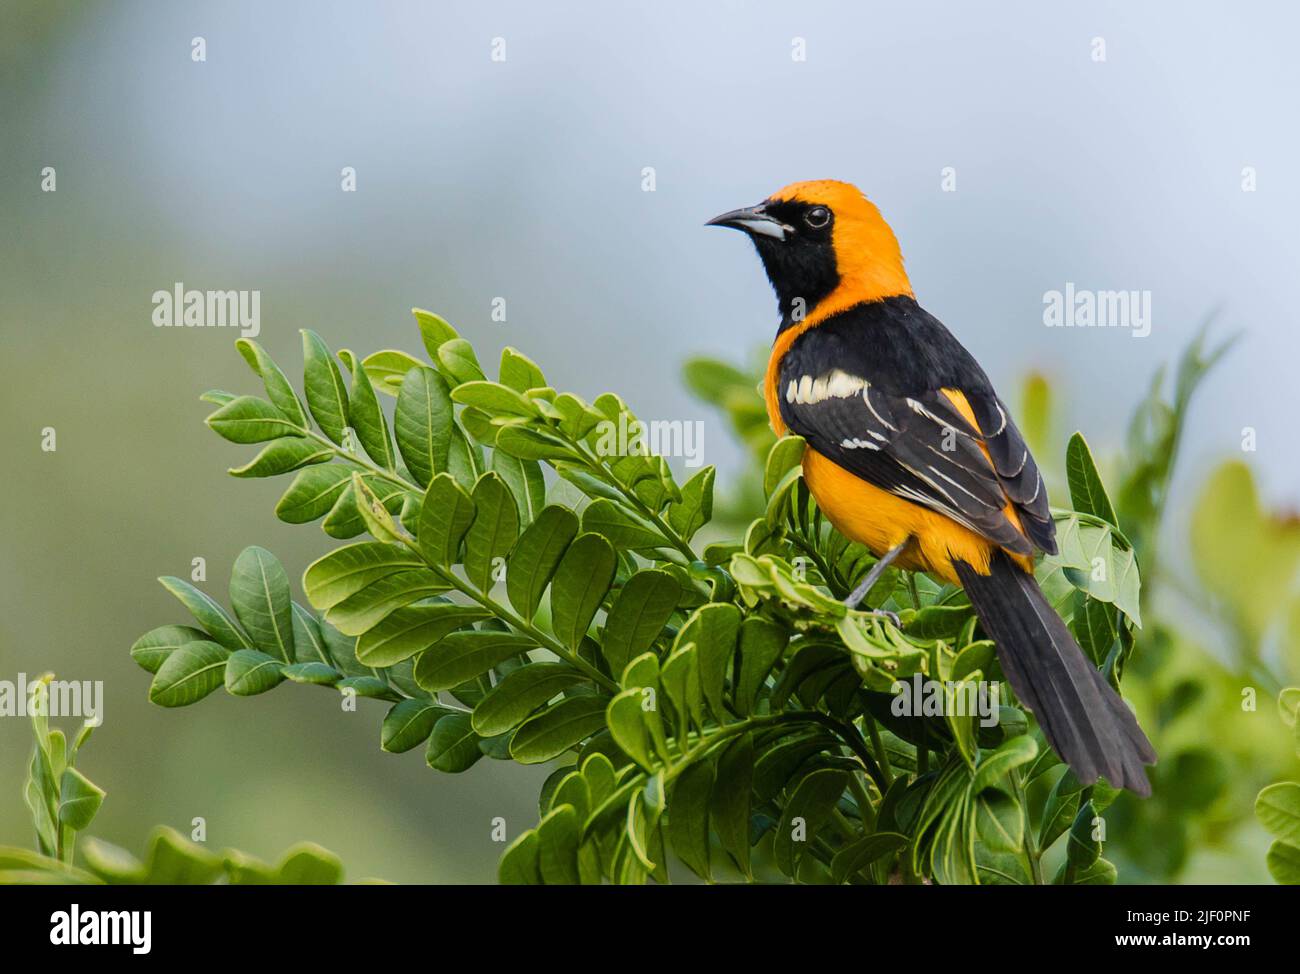 Tropischer orangefarbener Oriole-Vogel, der an einem sonnigen Morgen im Sian Kaan National Park in der Nähe von Tulum auf einem Ast mit grünen Blättern und verschwommenem Hintergrund steht Stockfoto